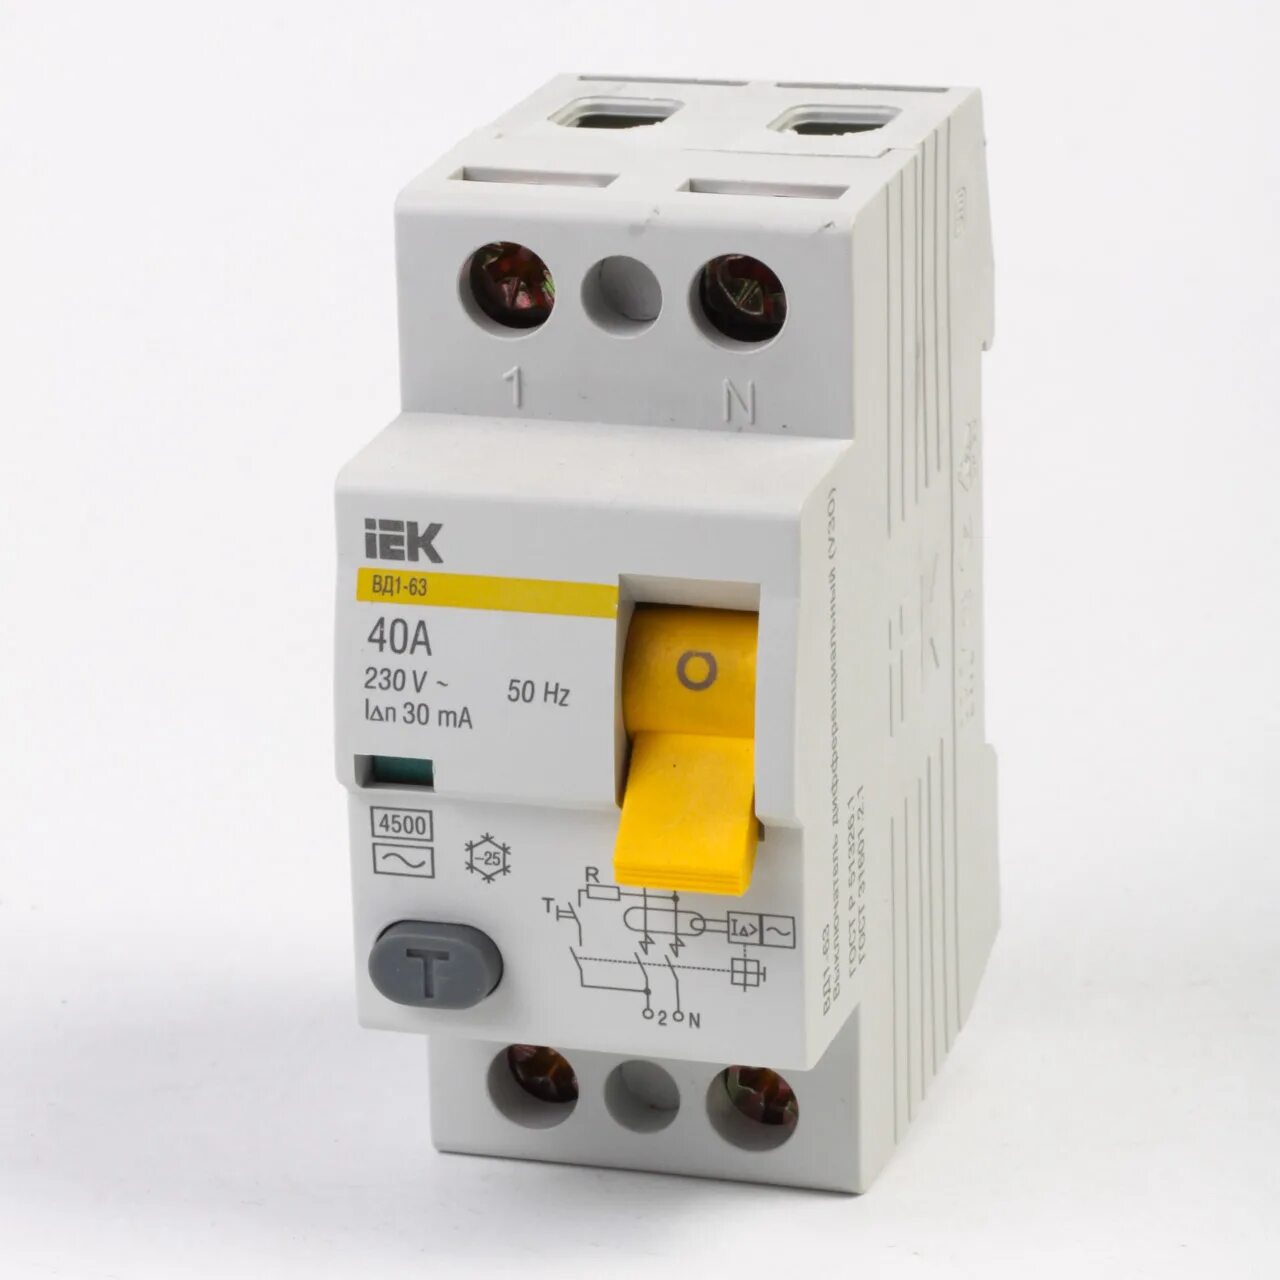 Автоматический выключатель 2p iek. Выключатели дифференциальные вд1-63 УЗО IEK. УЗО автомат вд1- 63 IEK. Выключатель IEK вд1-63. УЗО вд1-63 2p ИЭК 16а/10ма.